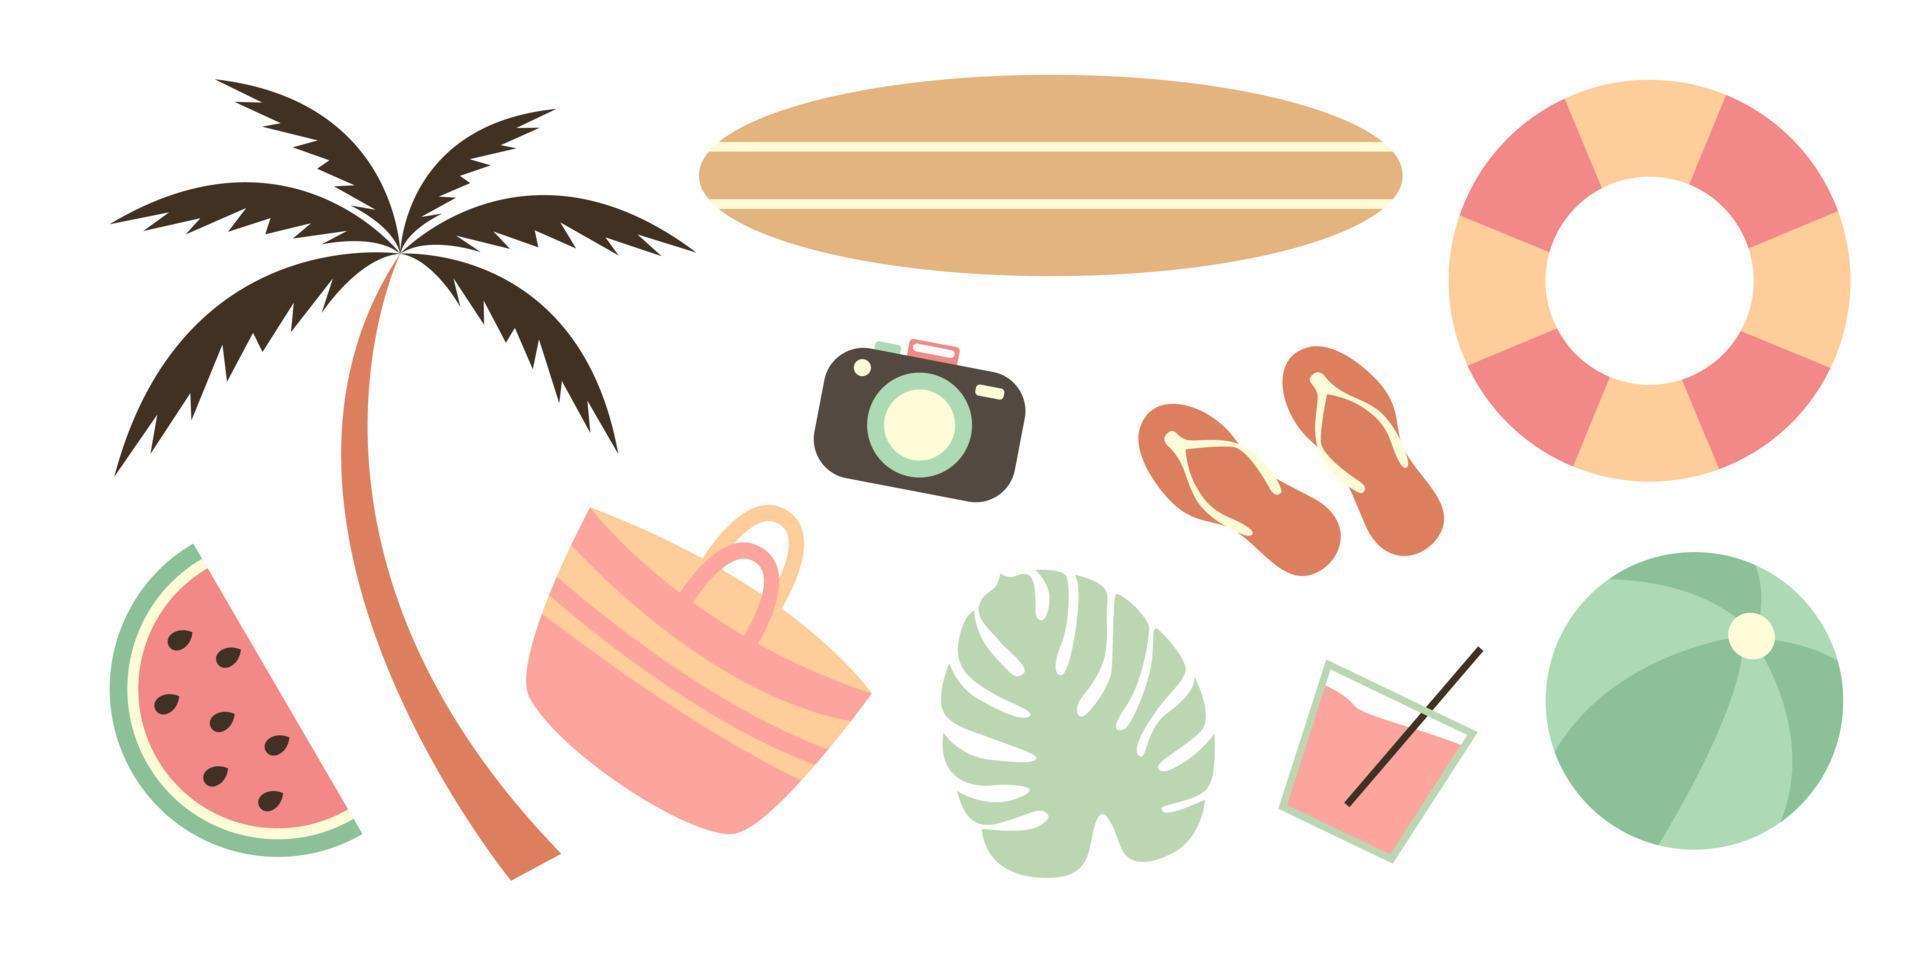 ensemble d'été d'éléments d'été mignons. planche de surf, palmier, limonade, appareil photo, sac, balle, pantoufles, bouée de sauvetage, pastèque. doodle beach party illustration pour carte postale, affiche, autocollant, emballage, tissu. vecteur